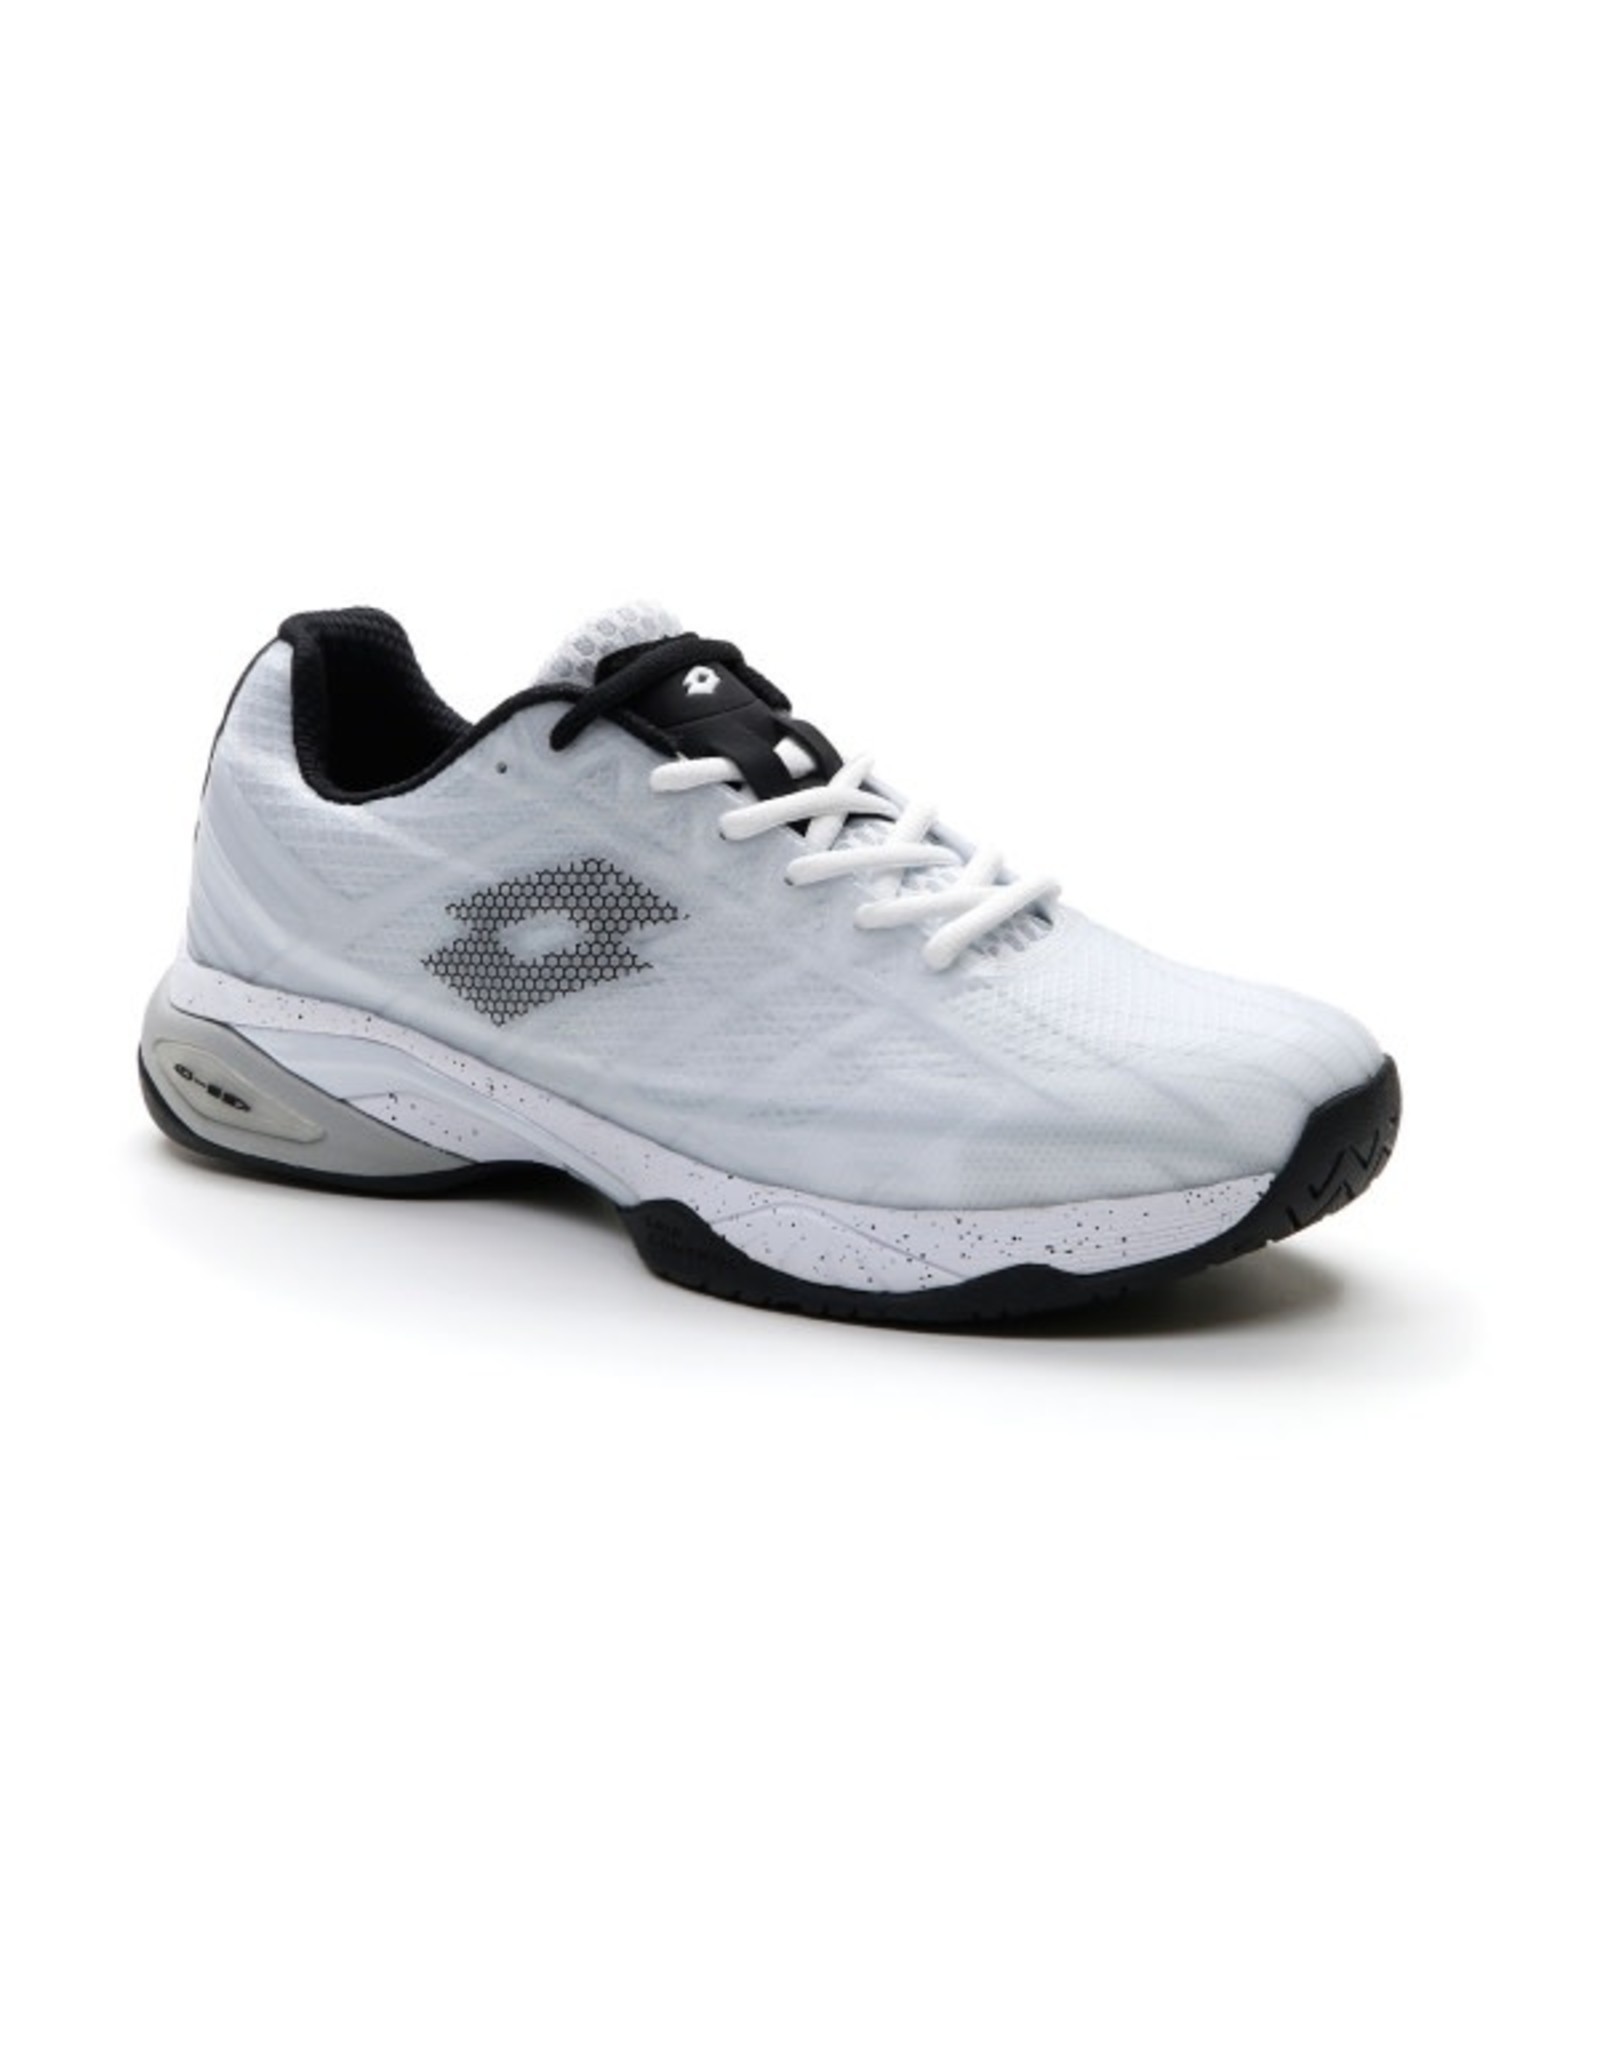 Lotto Lotto Mirage 300 Speed (White/Black/Gray) Men's Tennis Shoes